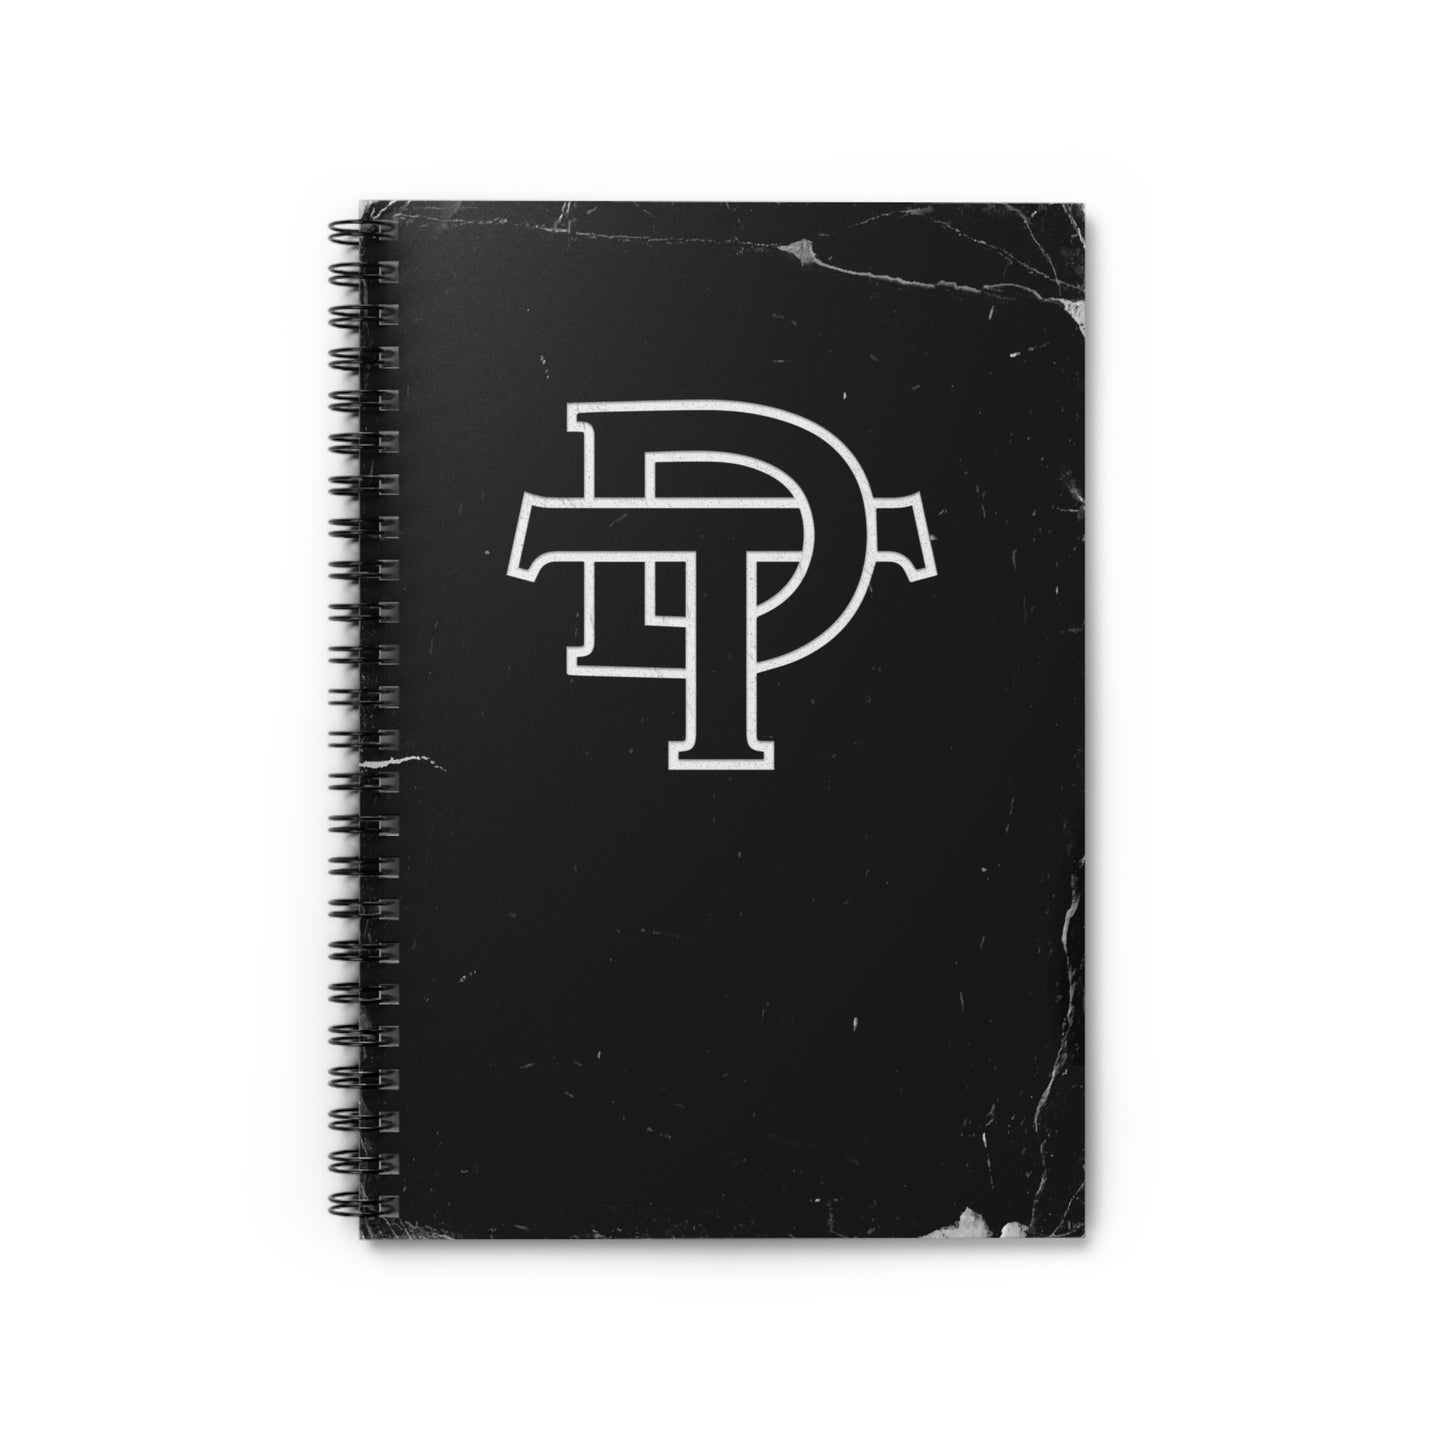 DT Spiral Notebook - Ruled Line